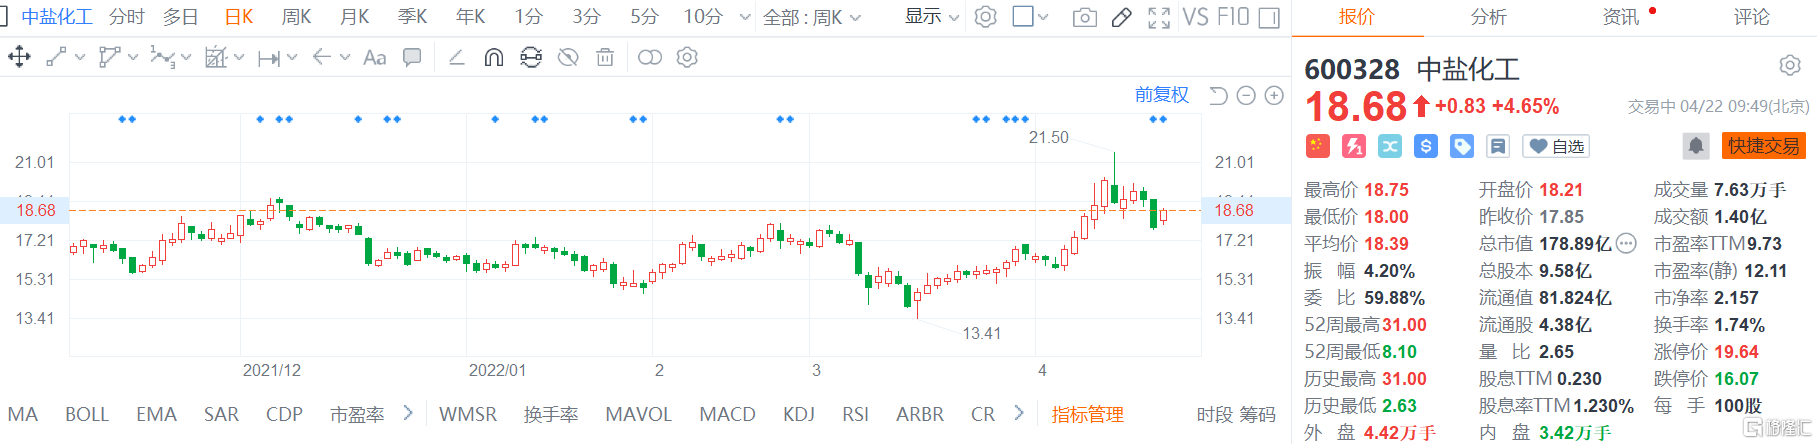 中盐化工(600328.SH)股价反弹回升 现报18.68元涨幅4.6%